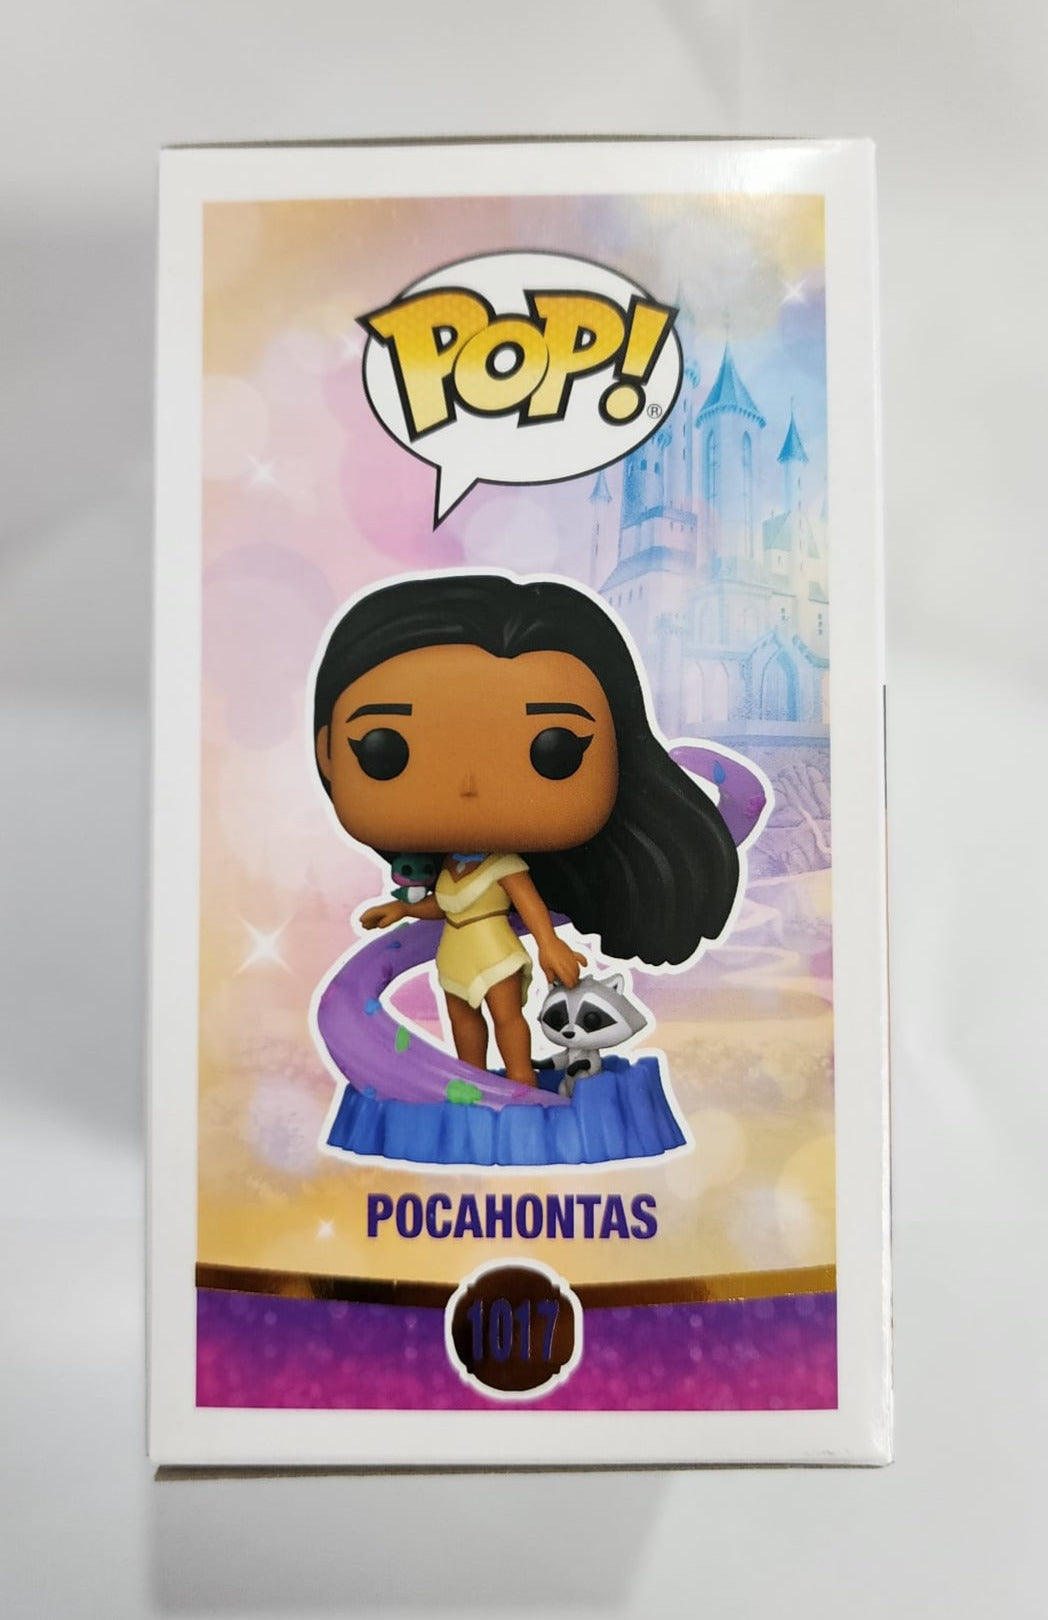 Disney Princesses - Pocahontas #1017 Signed Pop! Vinyl